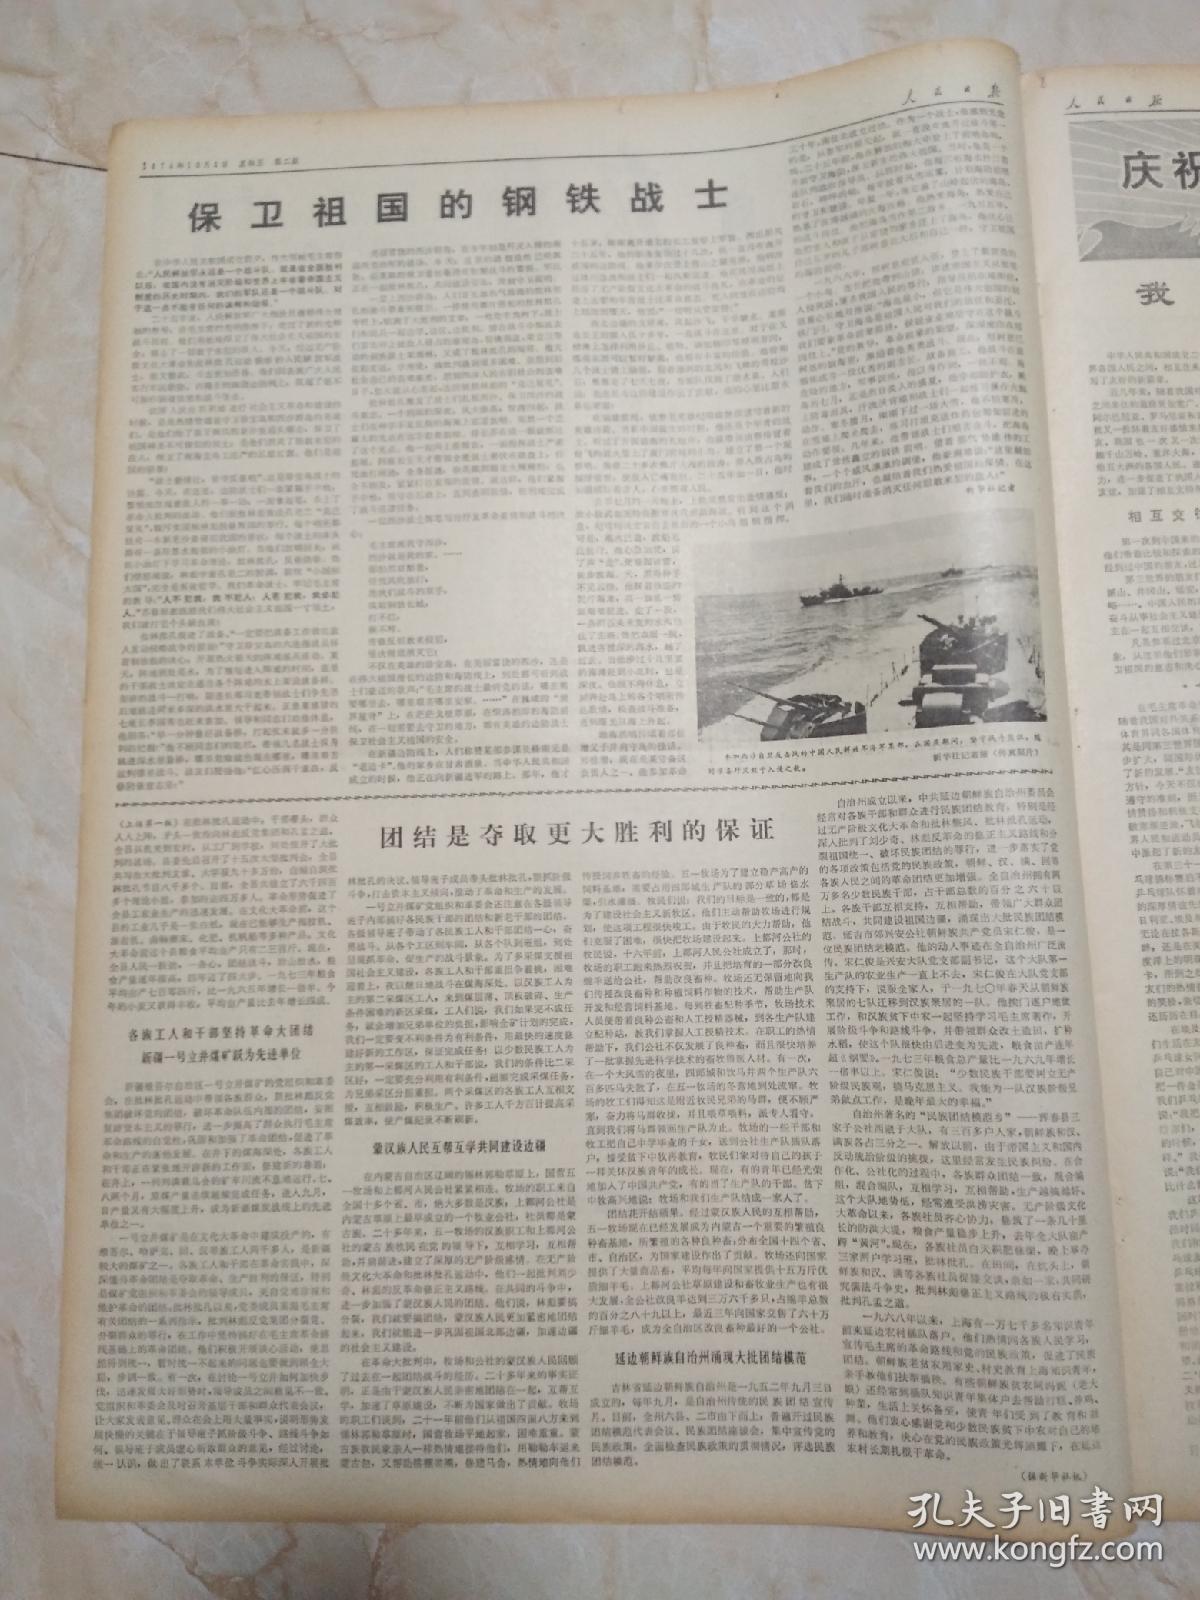 人民日报1974年10月4日 6版。团结是取得更大胜利的保证。